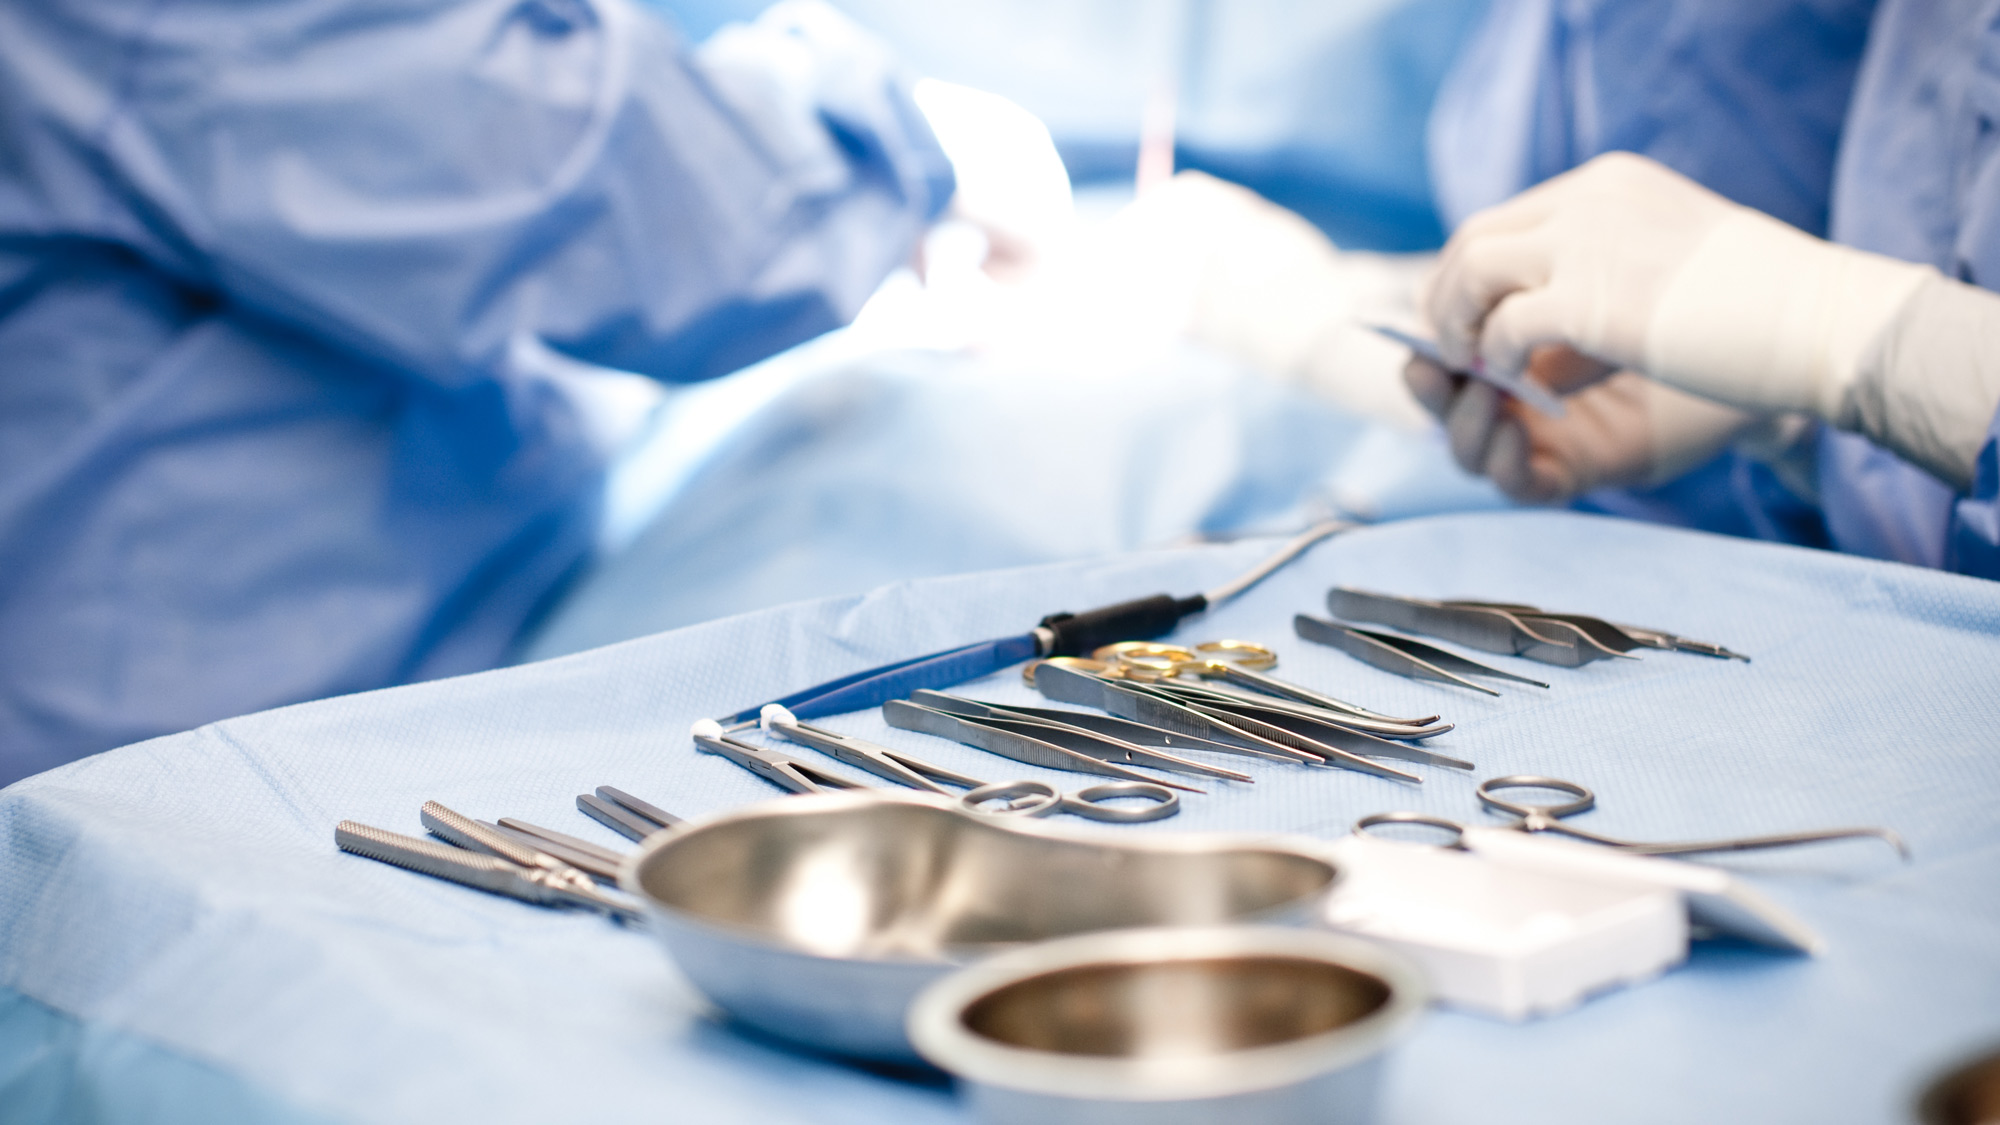 Operationsinstrumente während einer Operation